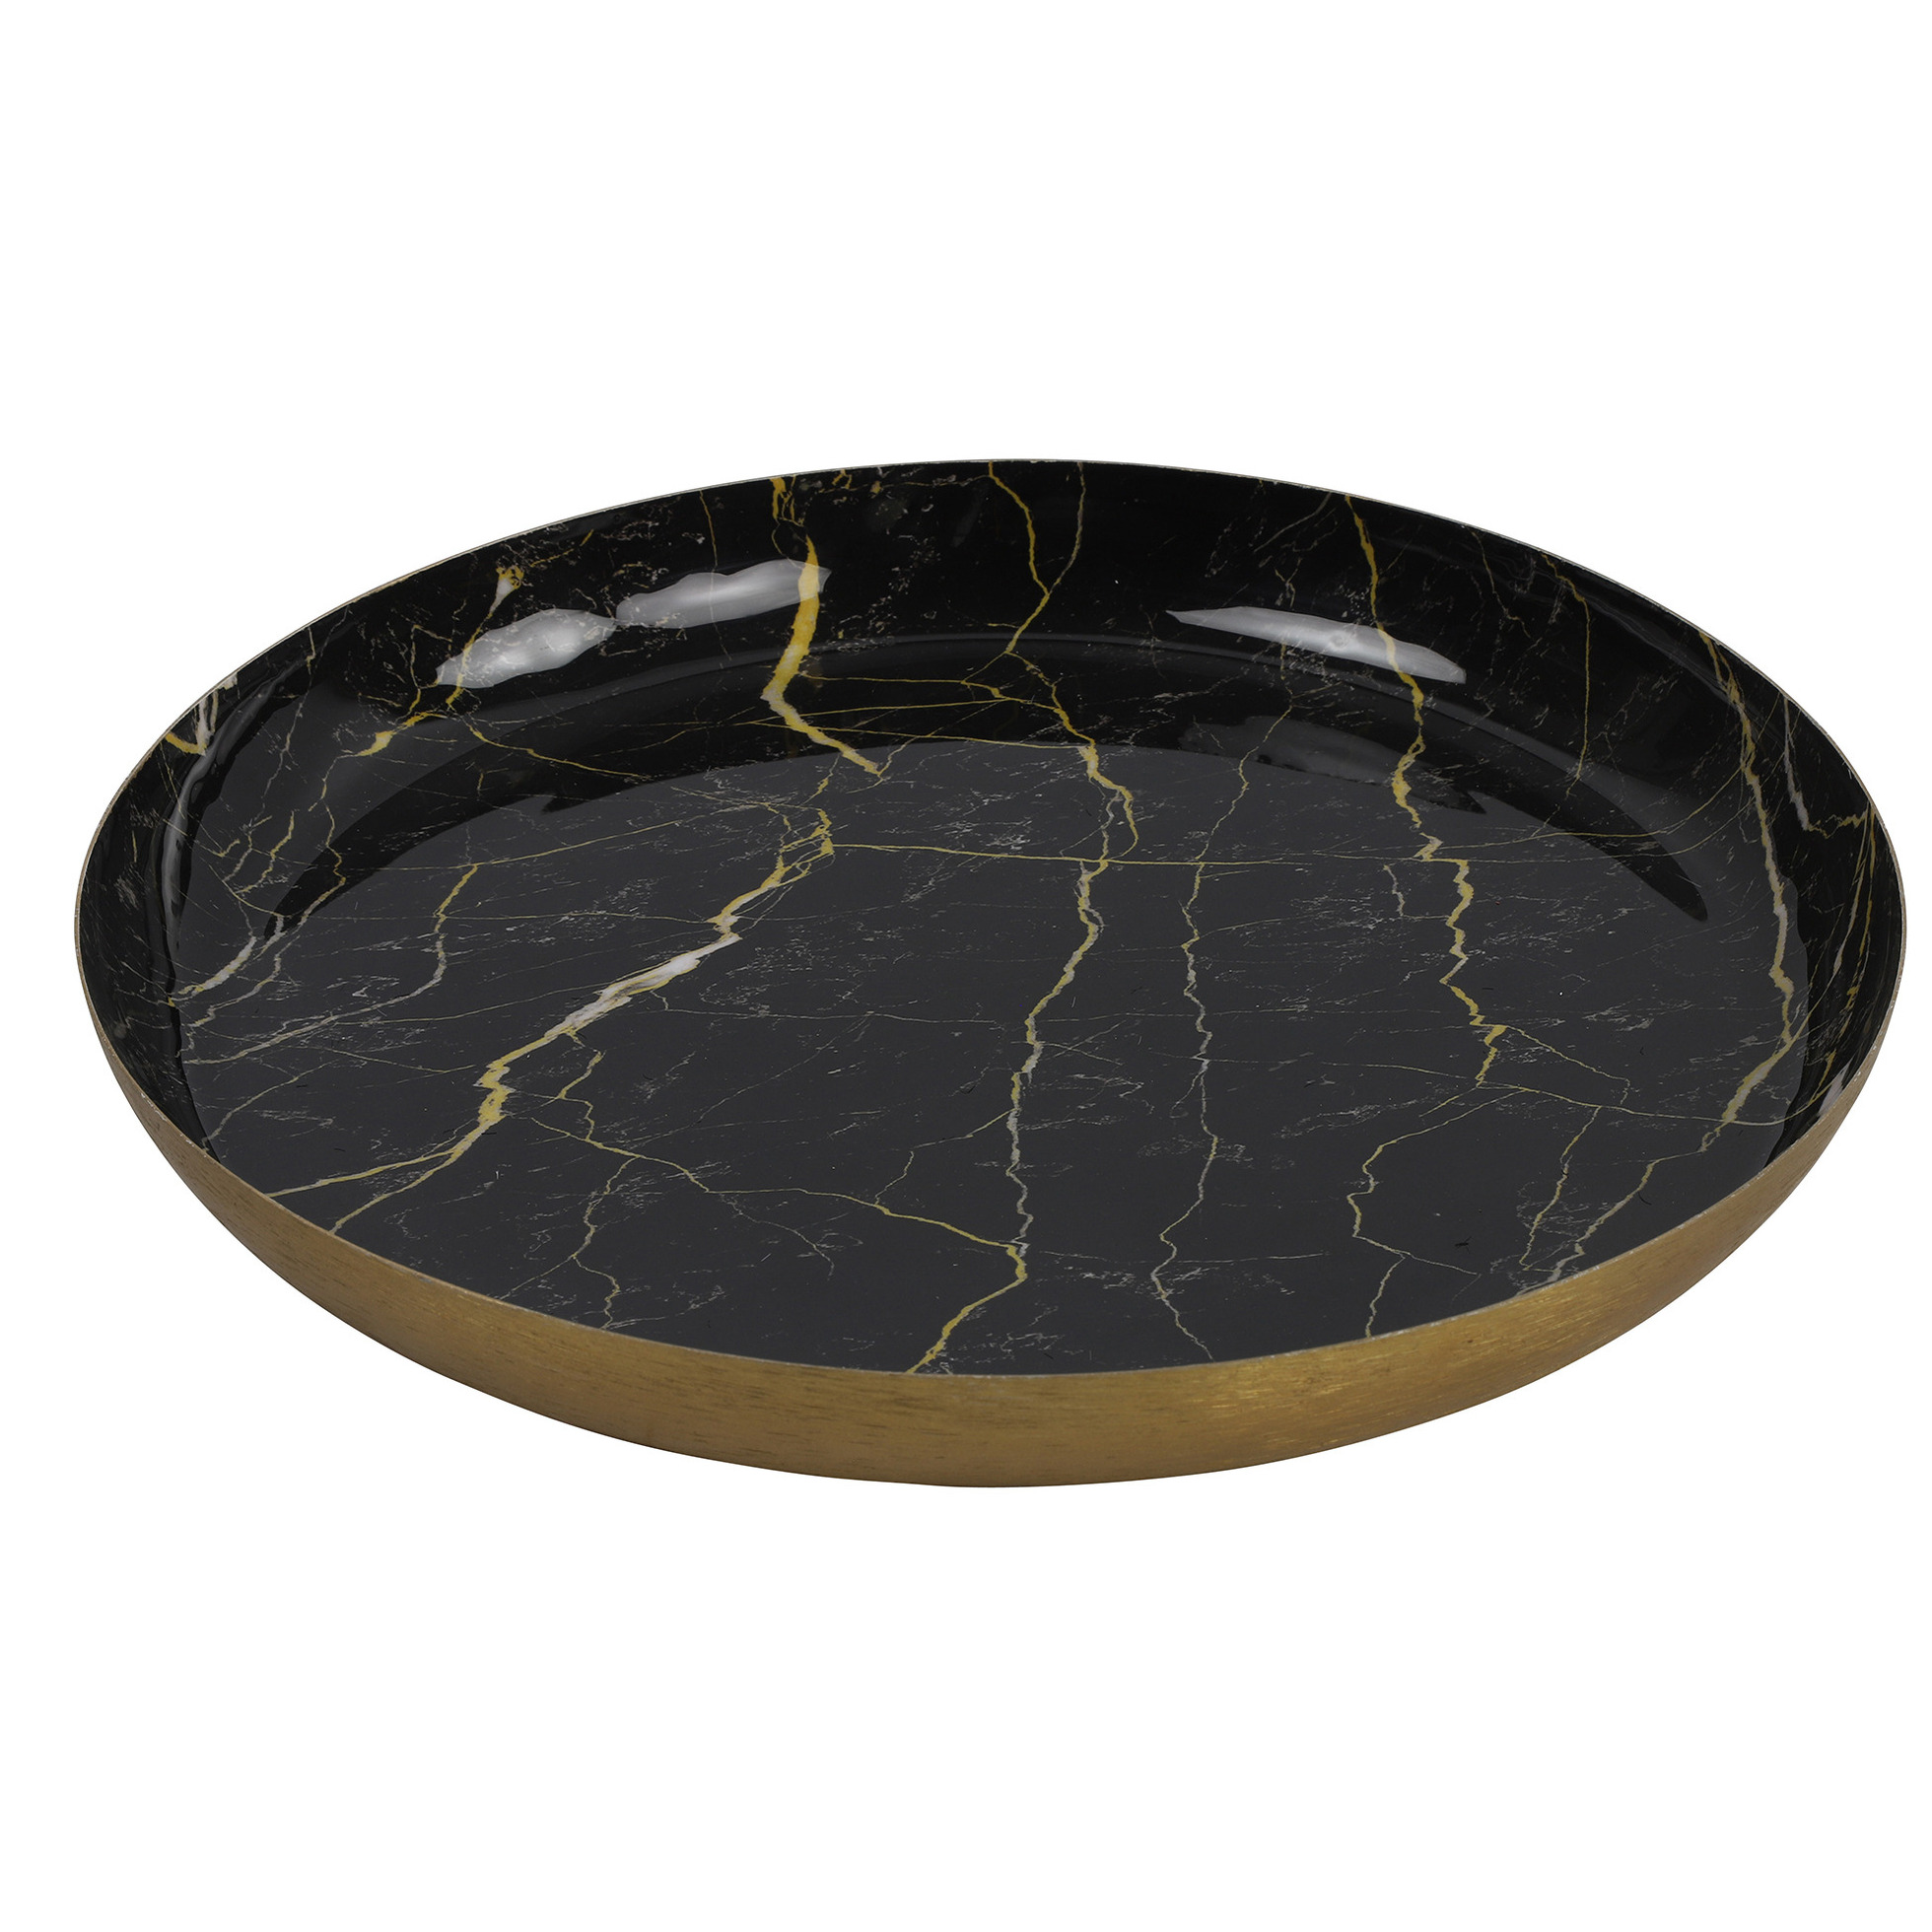 Countryfield Dienblad Marble Metaal zwart-goud Dia 26 cm